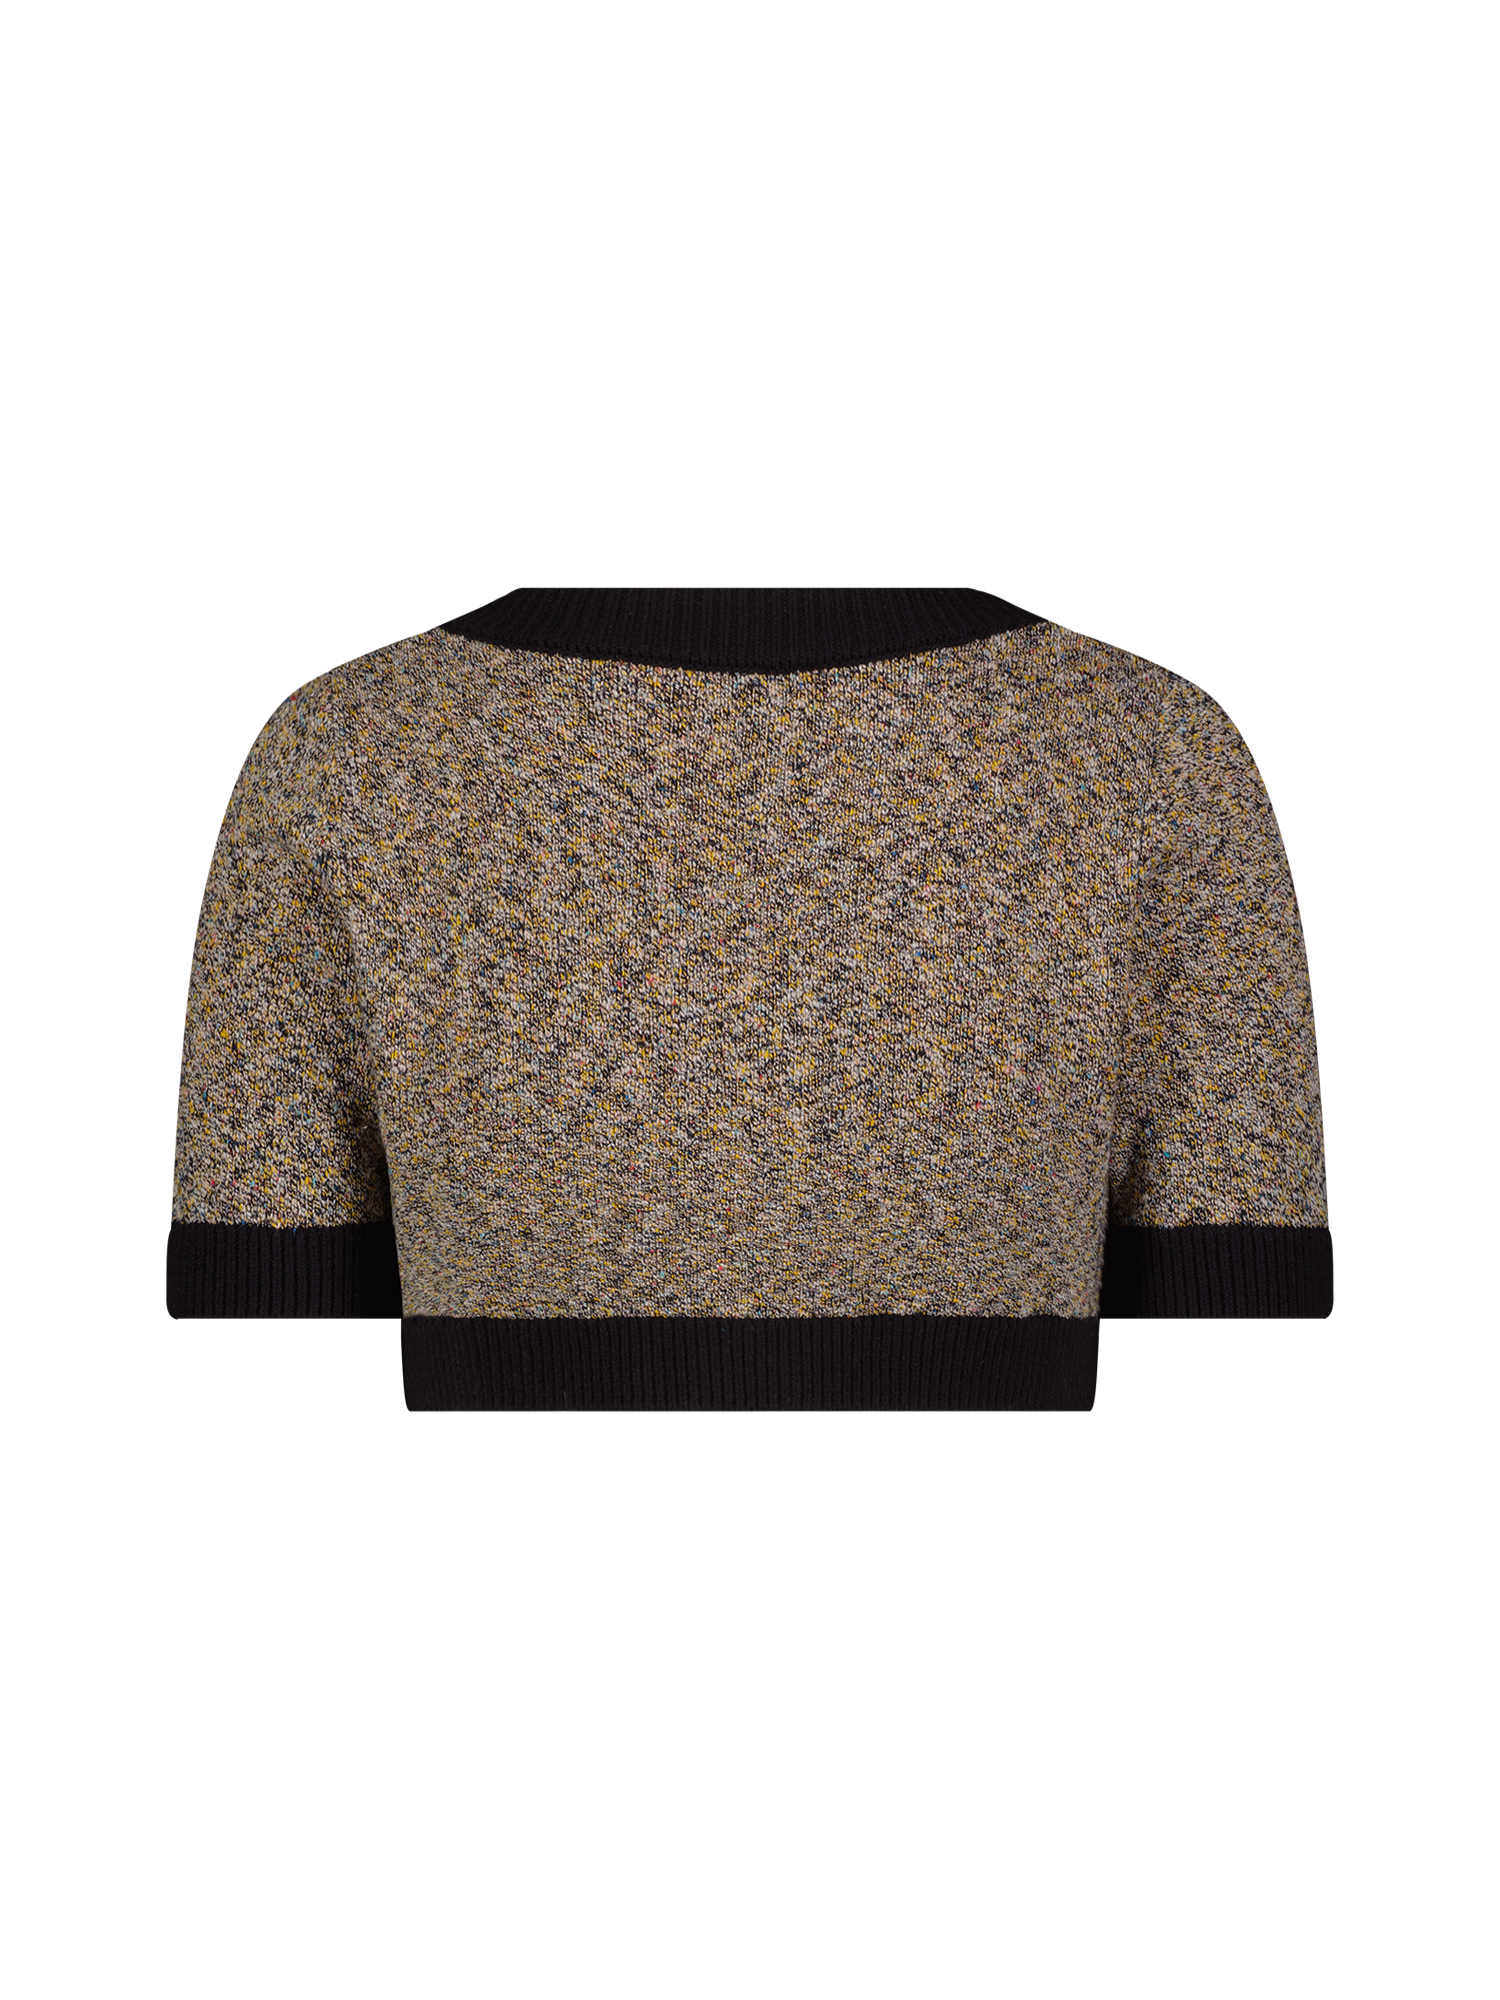 Black Tweed Knit Apron Crop Top